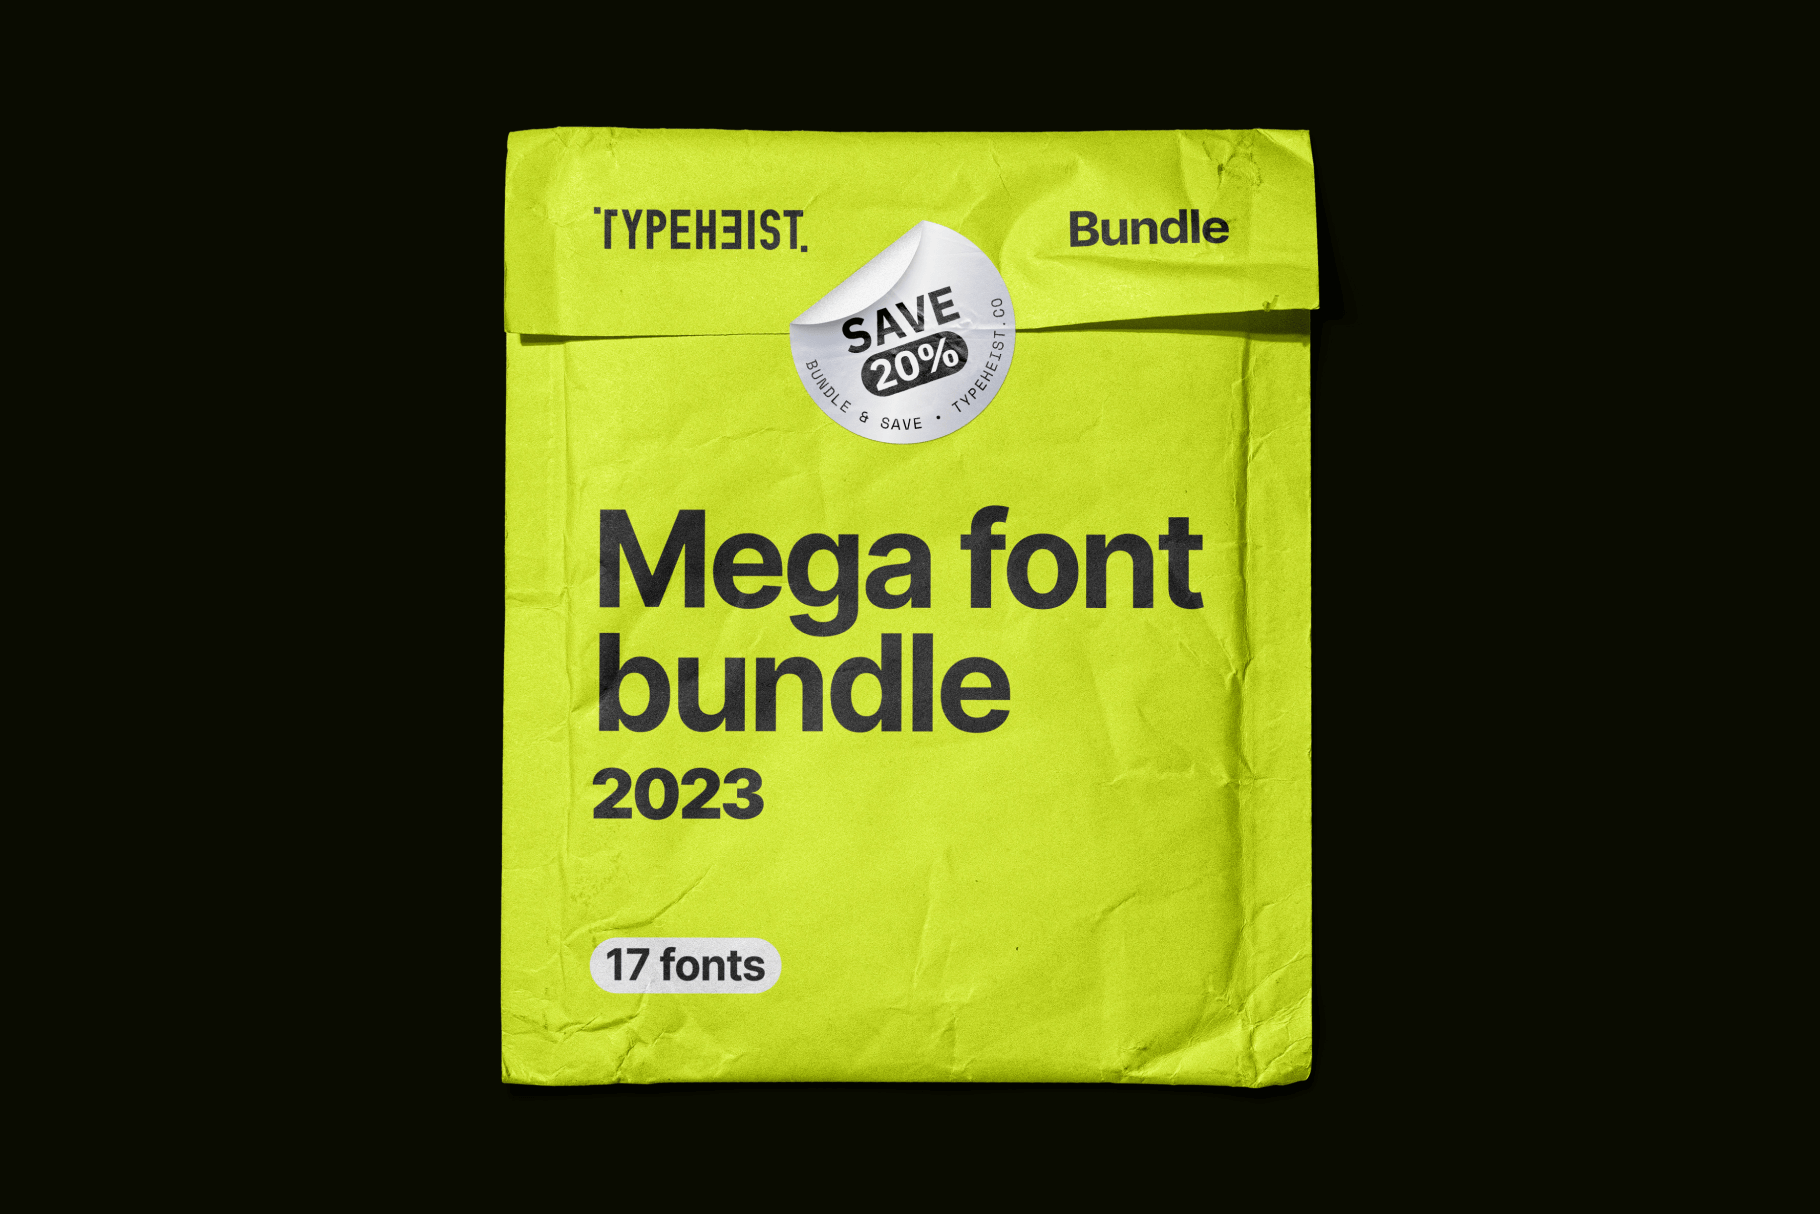 Mega Font Bundle 2023: A mega bundle of 17 TYPEHEIST handwritten fonts